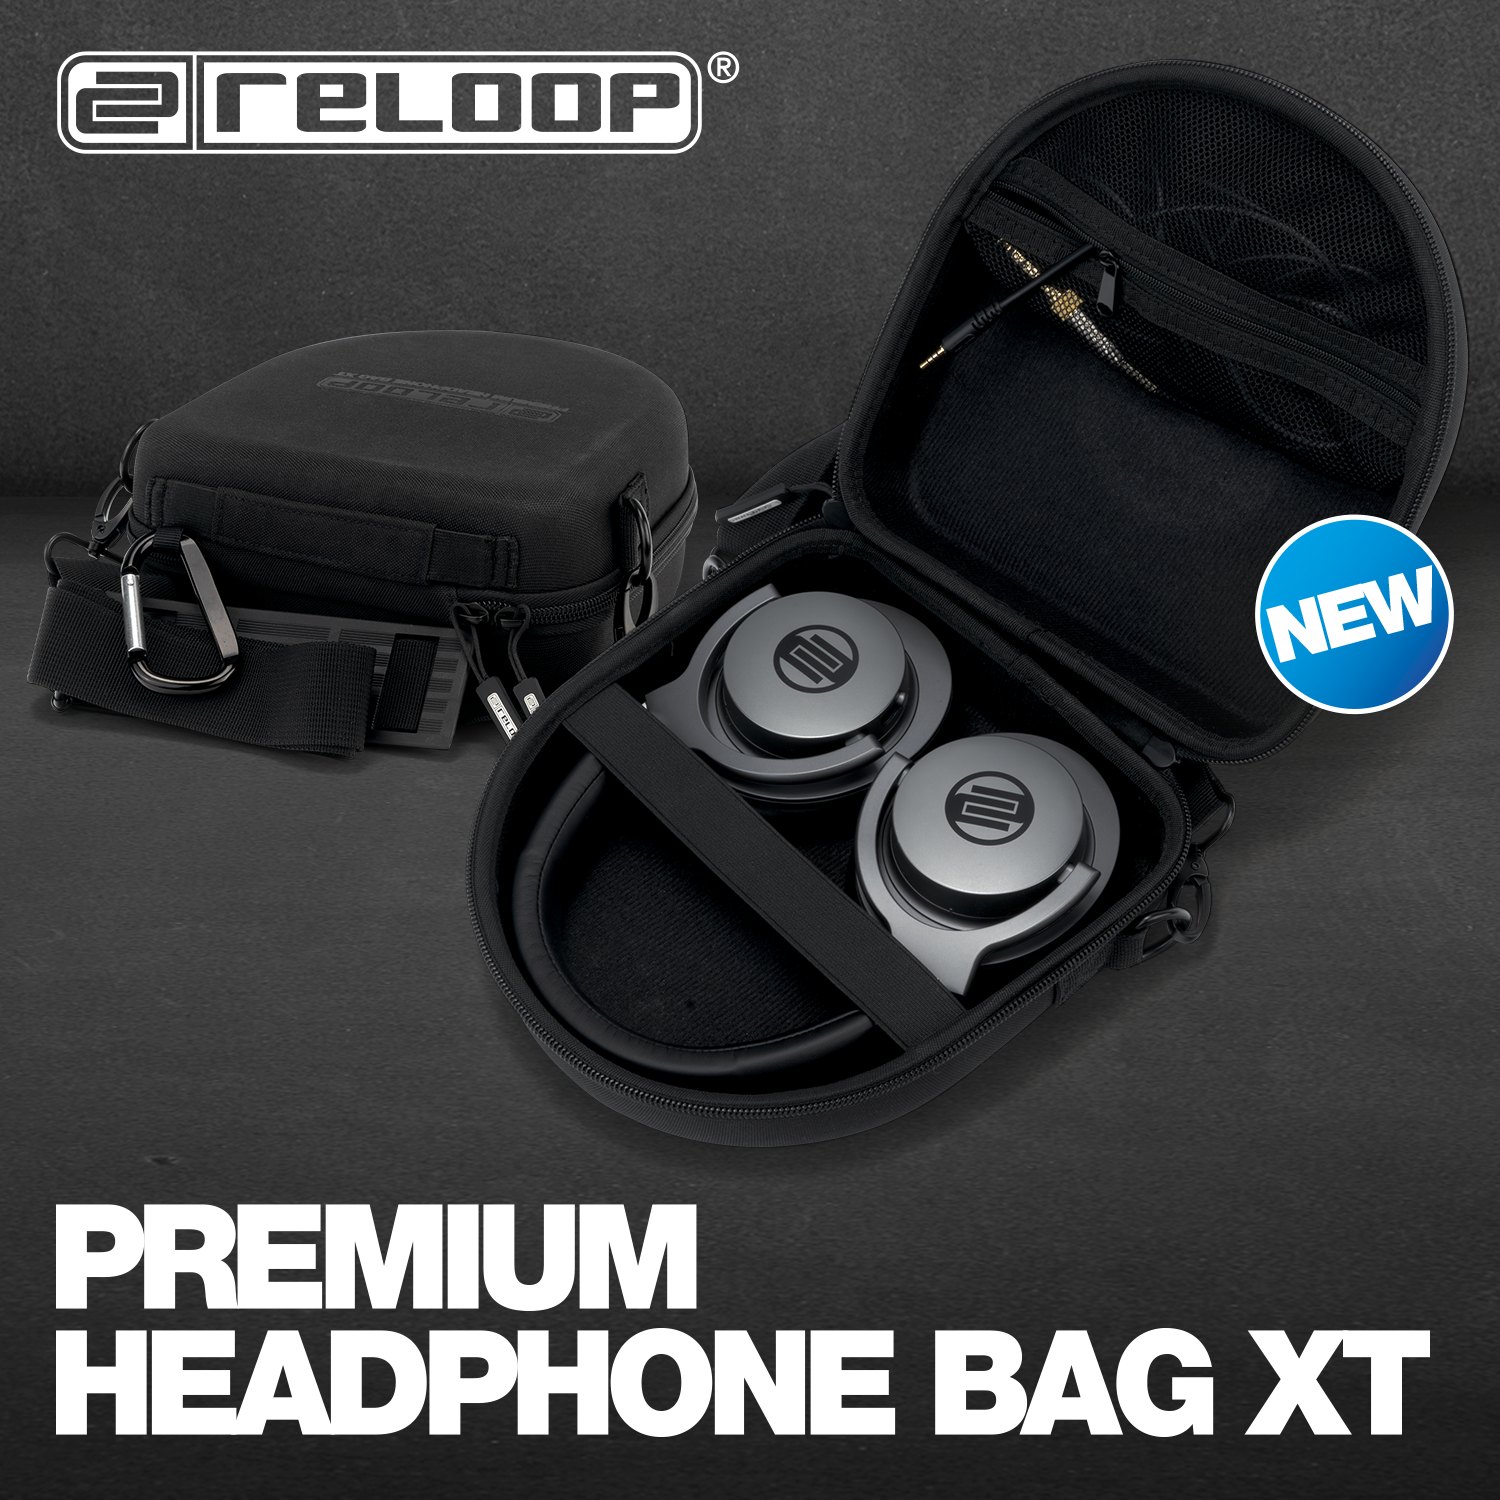 NEW: Reloop Premium Headphone Bag XT